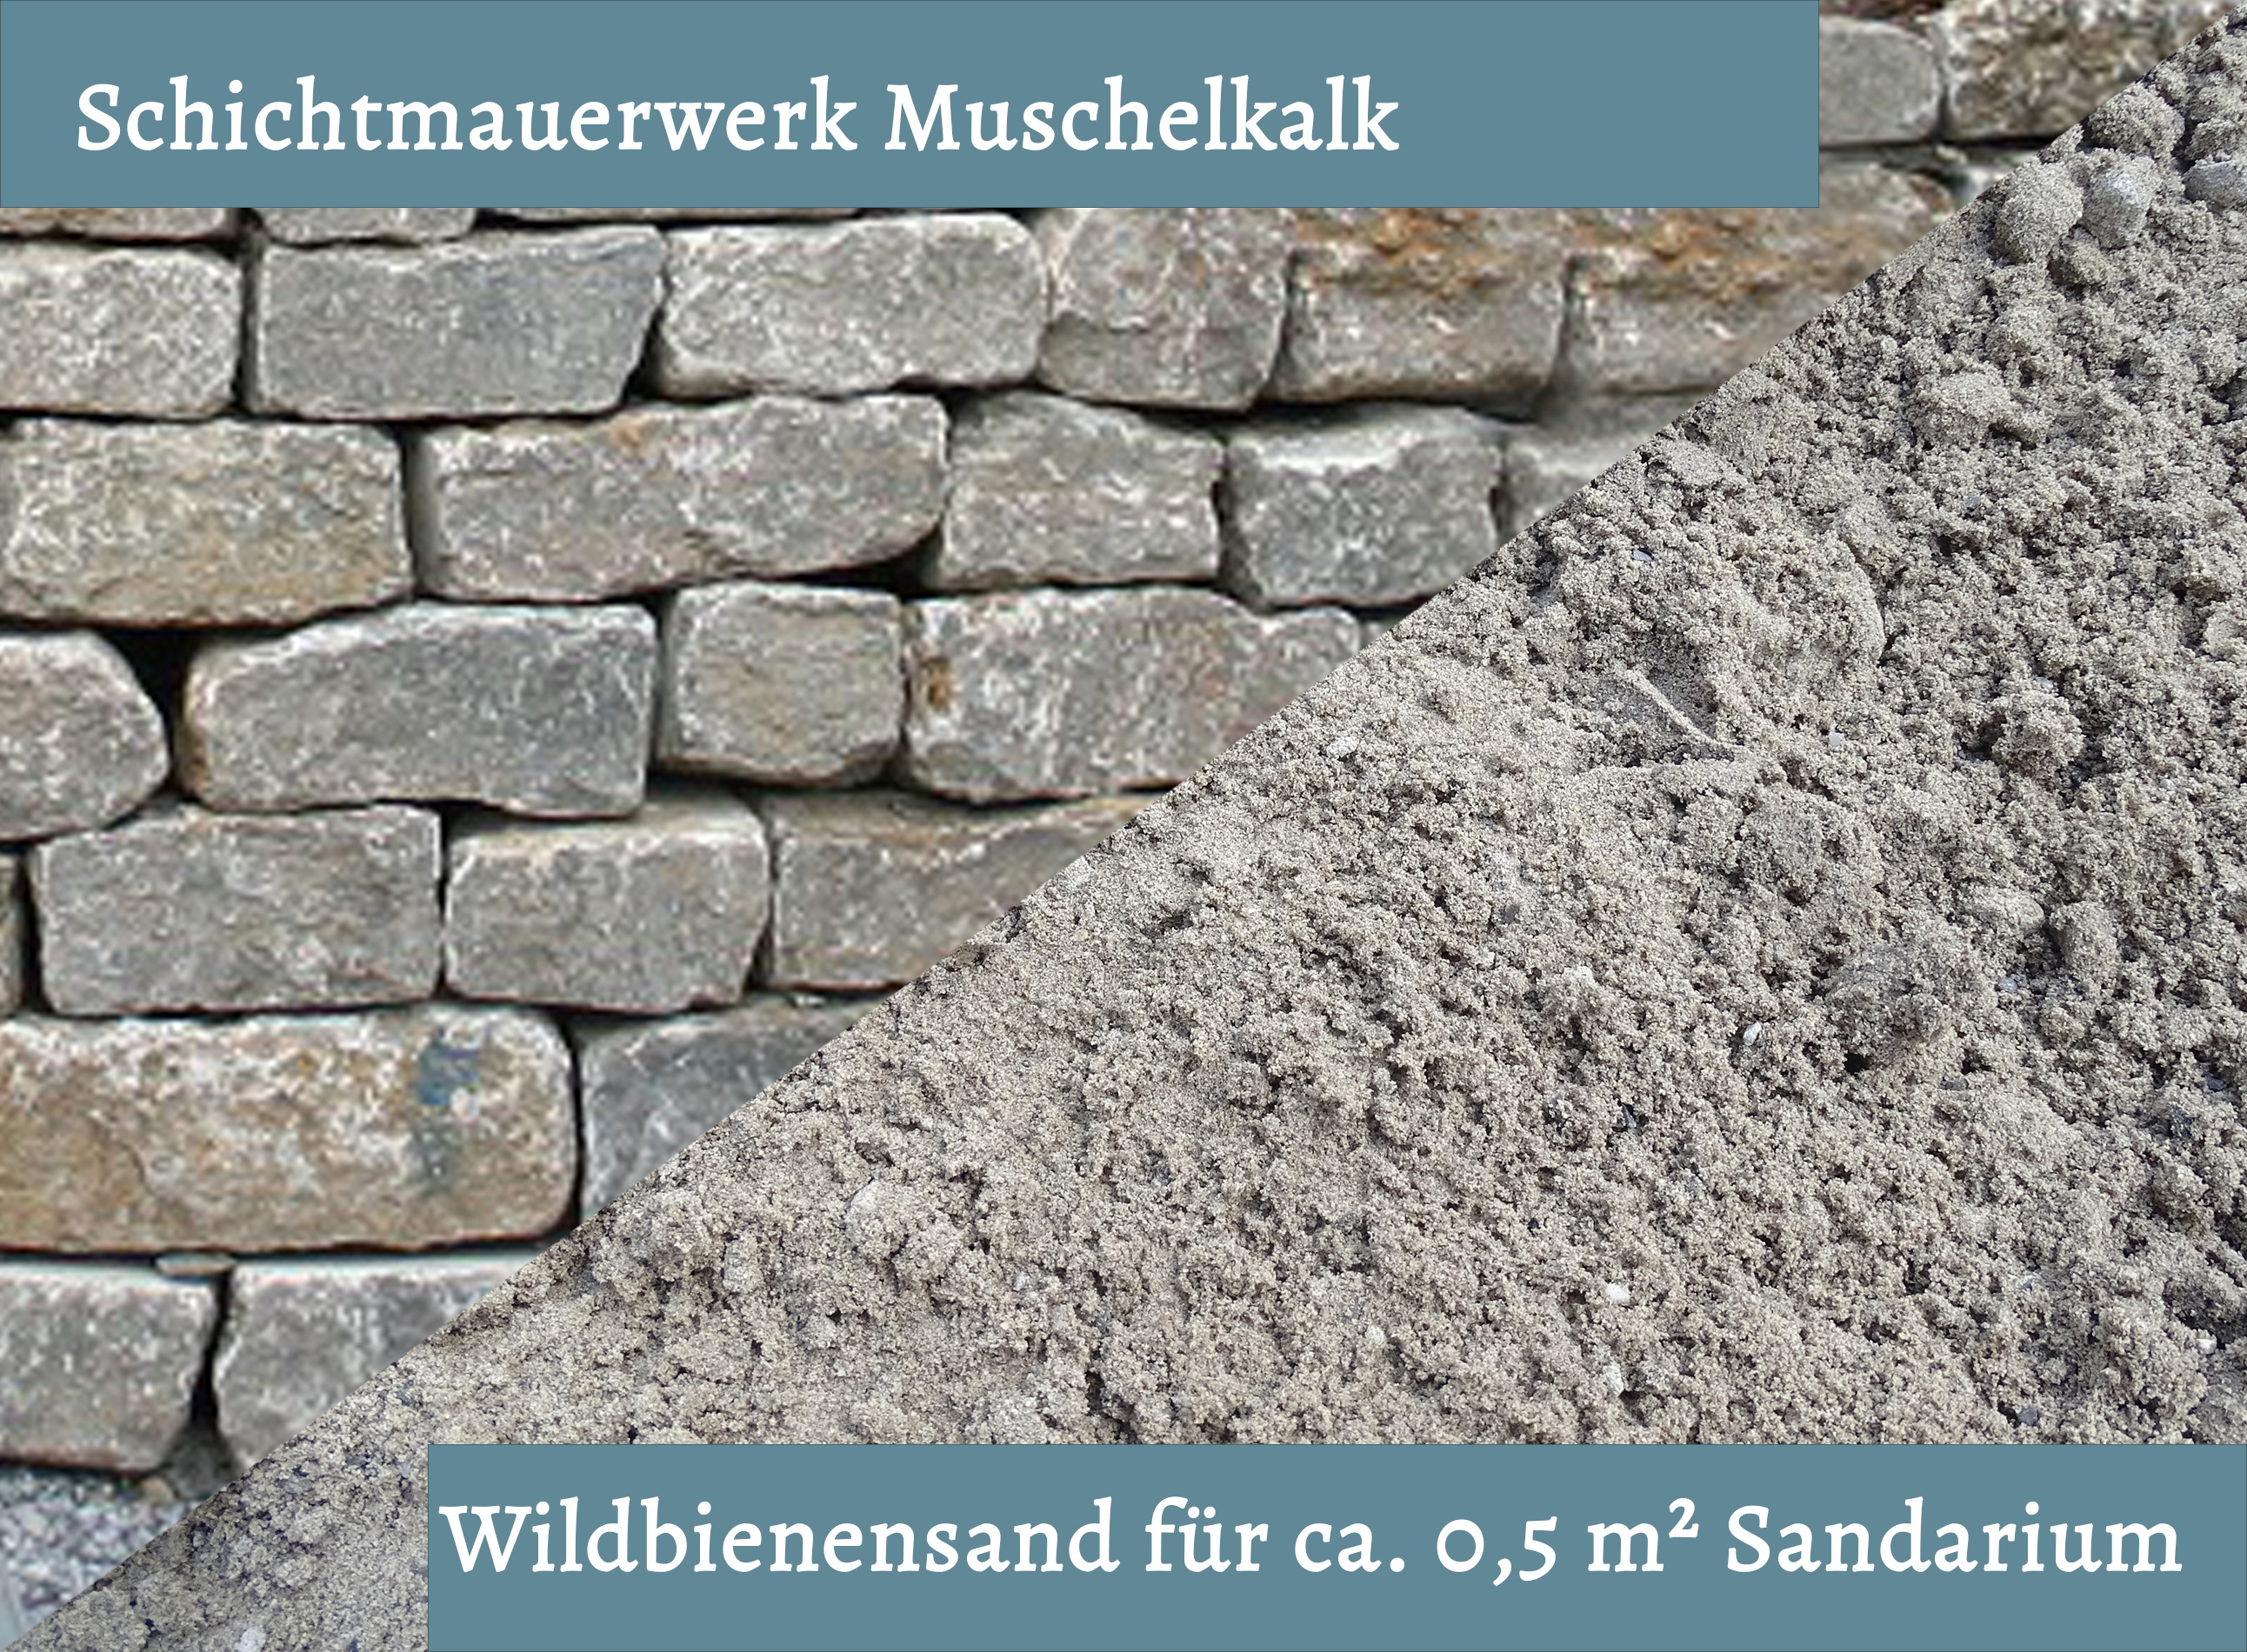 Wildbienensand mit Schichtmauer Muschelkalk für Sandarium 0,5 m²